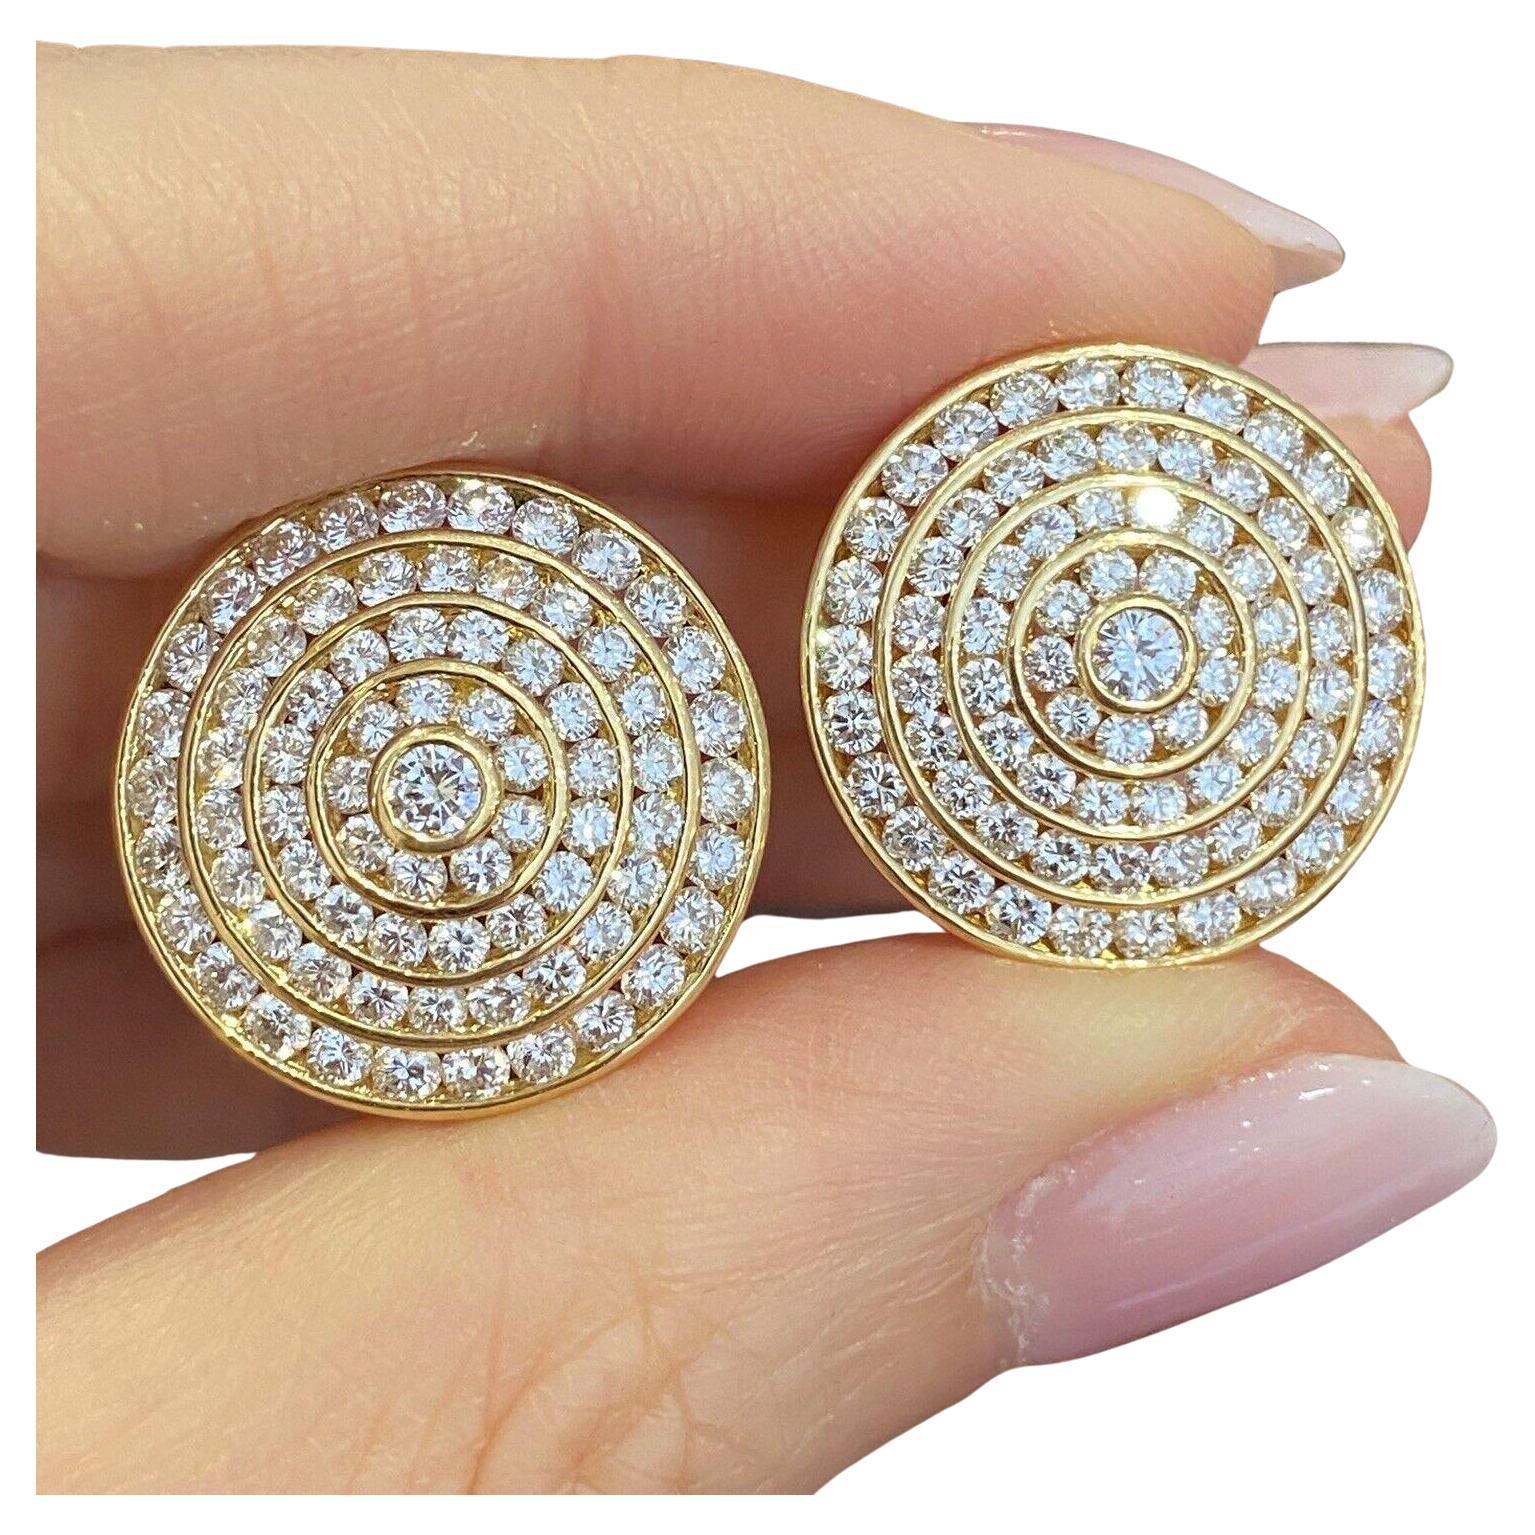 4 Reihen Kreis-Diamant-Ohrringe mit 3,95 Karat Gesamtgewicht aus 18 Karat Gelbgold

Runde Diamant-Ohrringe mit vier konzentrischen Kreisen mit runden Brillanten und einem runden Diamanten in der Mitte in 18k Gelbgold. Die Ohrringe werden durch